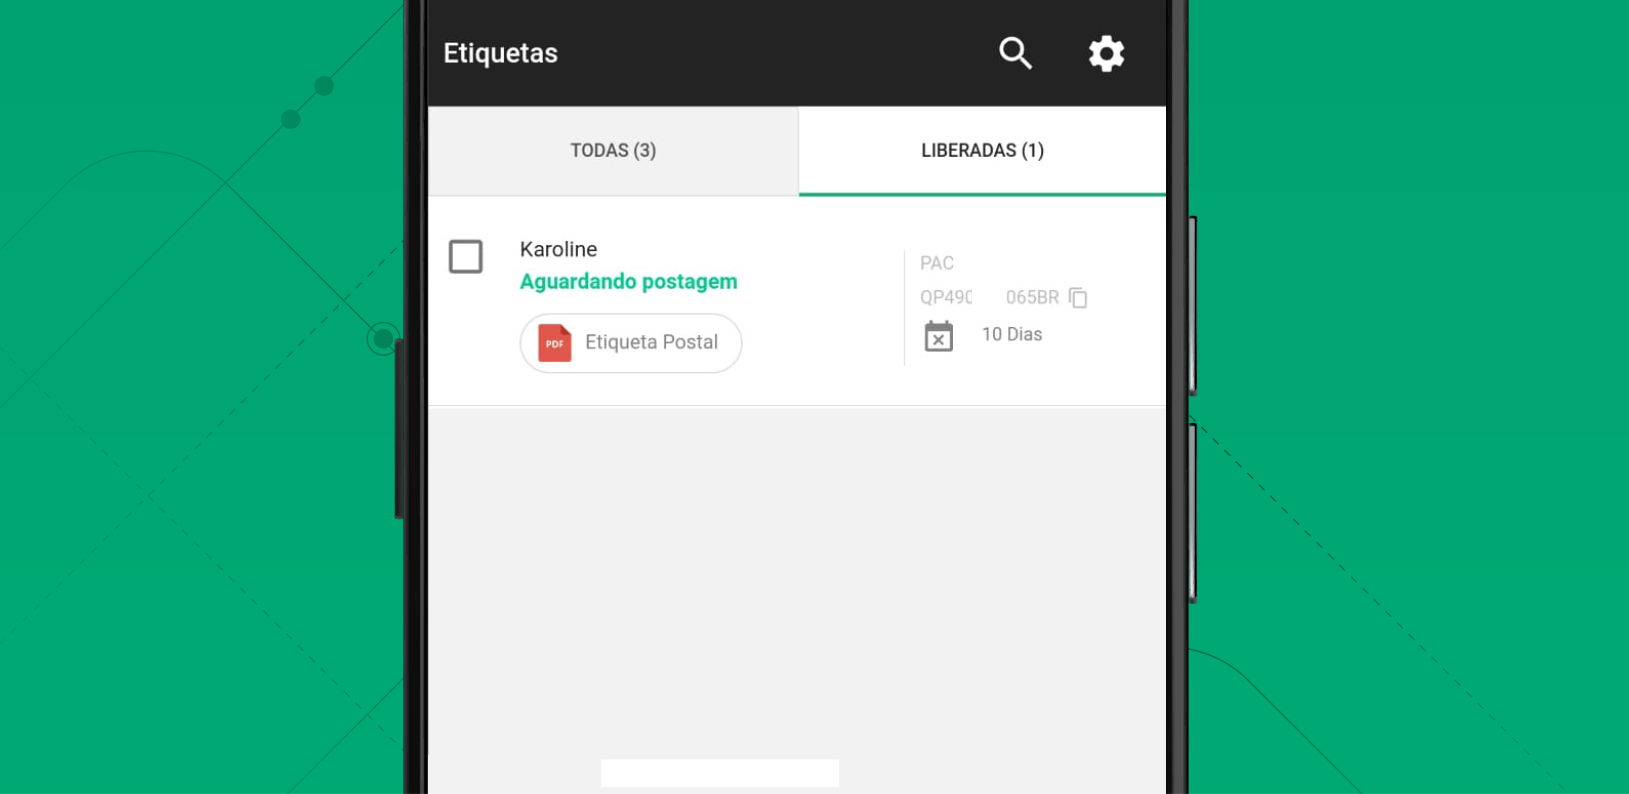 Print da tela do app SuperFrete mostrando o código de rastreio da encomenda